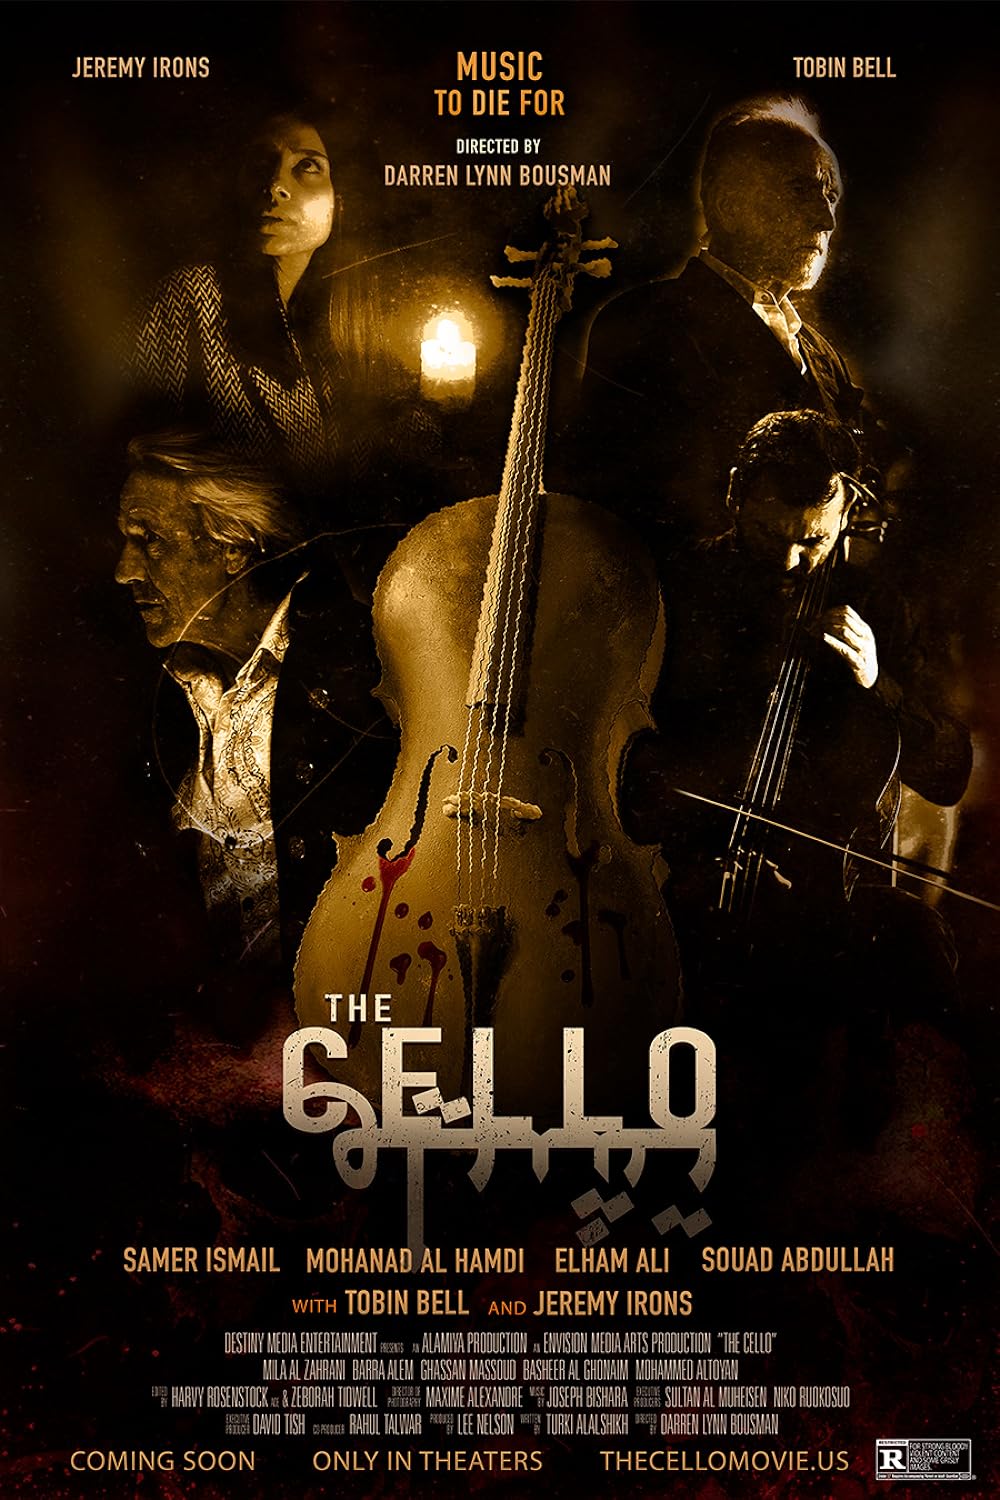 The Cello Trailer & Poster